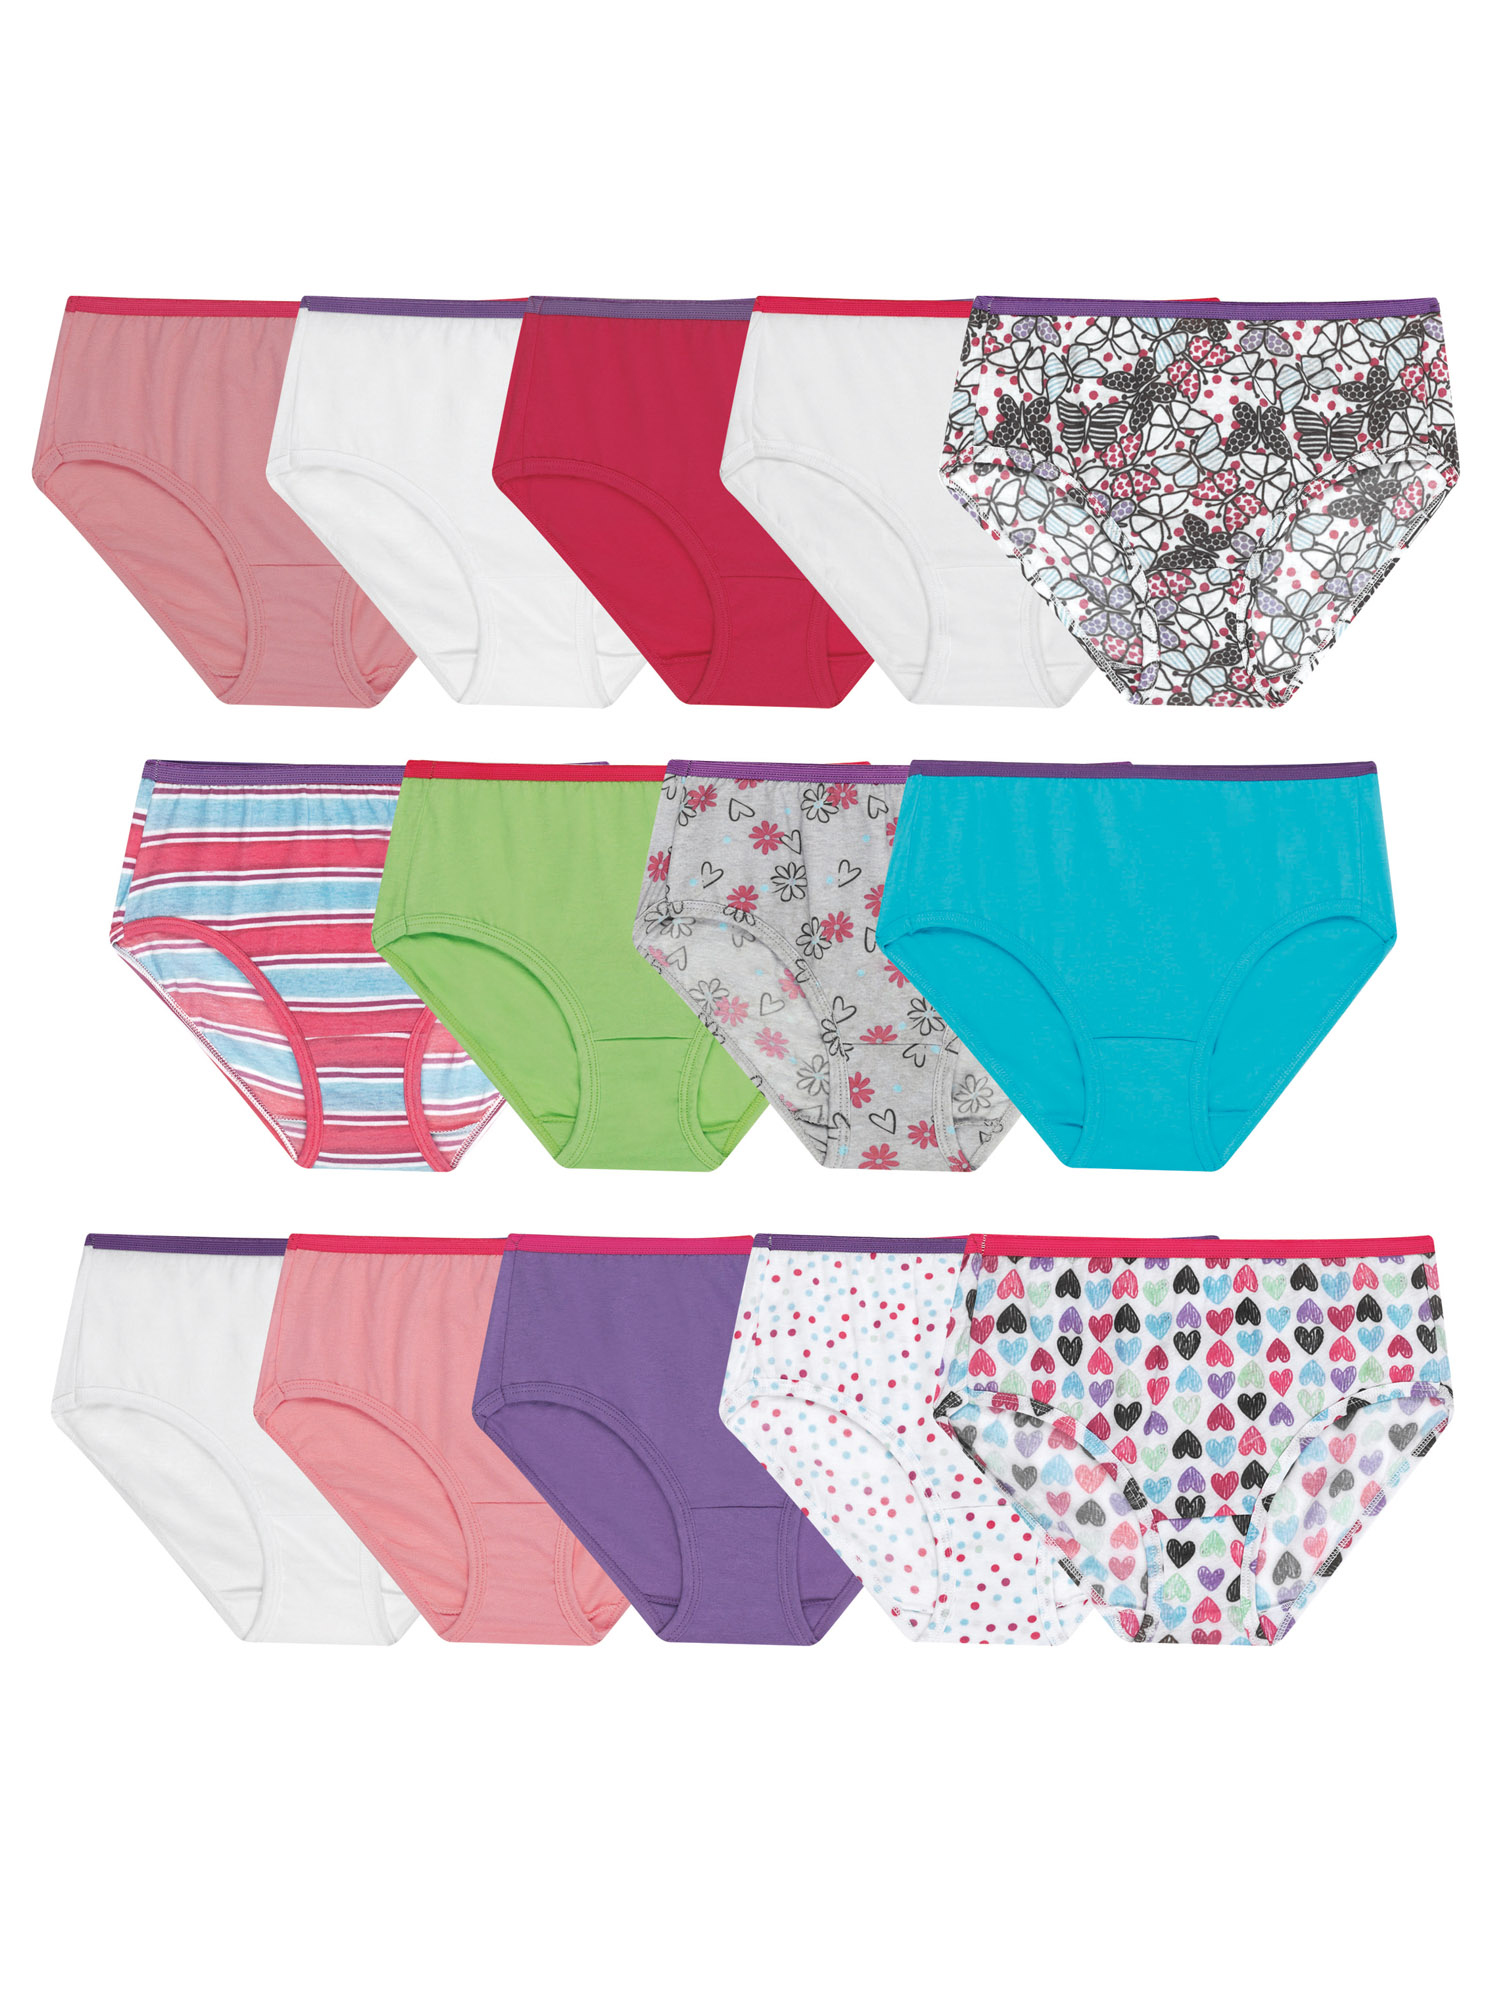 Hanes Girls Underwear, 14 Pack Tagless Super Soft Cotton Brief Panties  Sizes 4 - 16